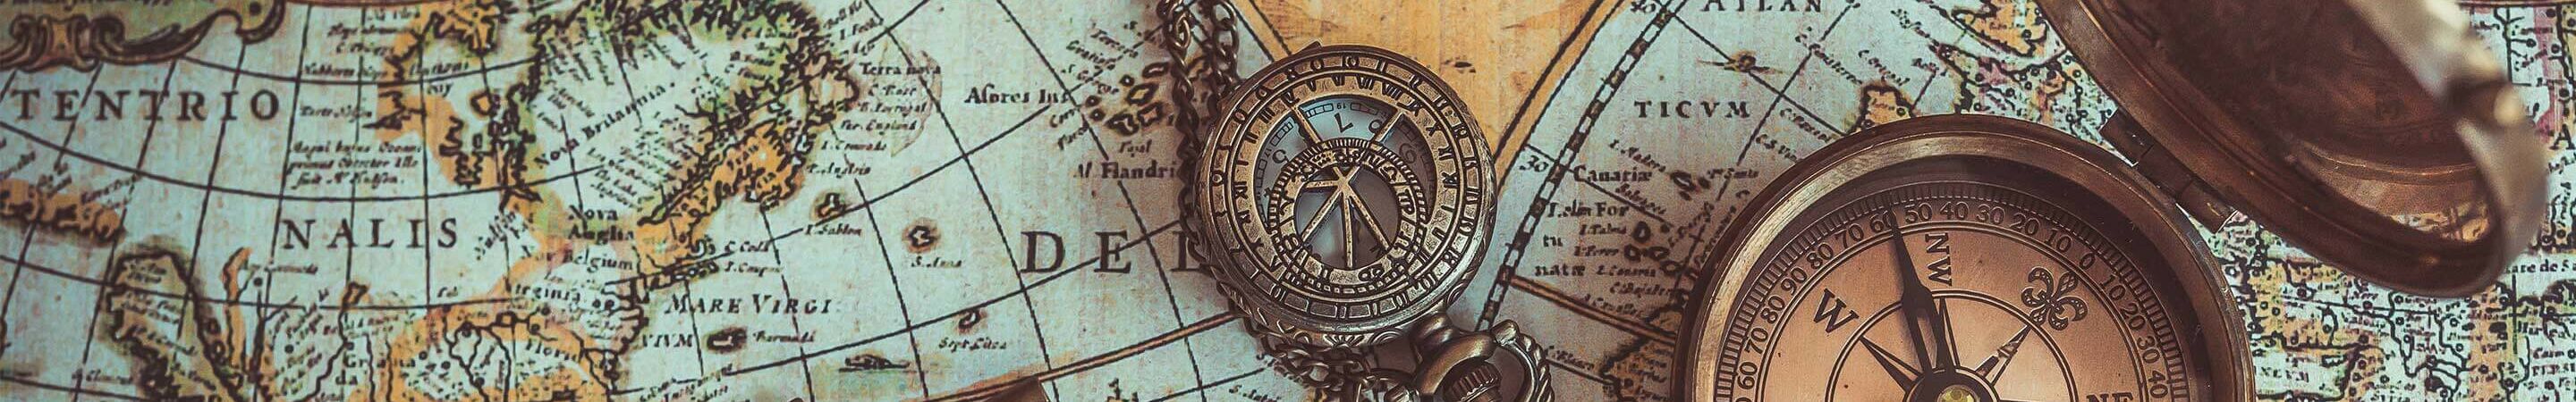 Symbolbild con4gis-Maps mit einer alten Karte und einem Kompass